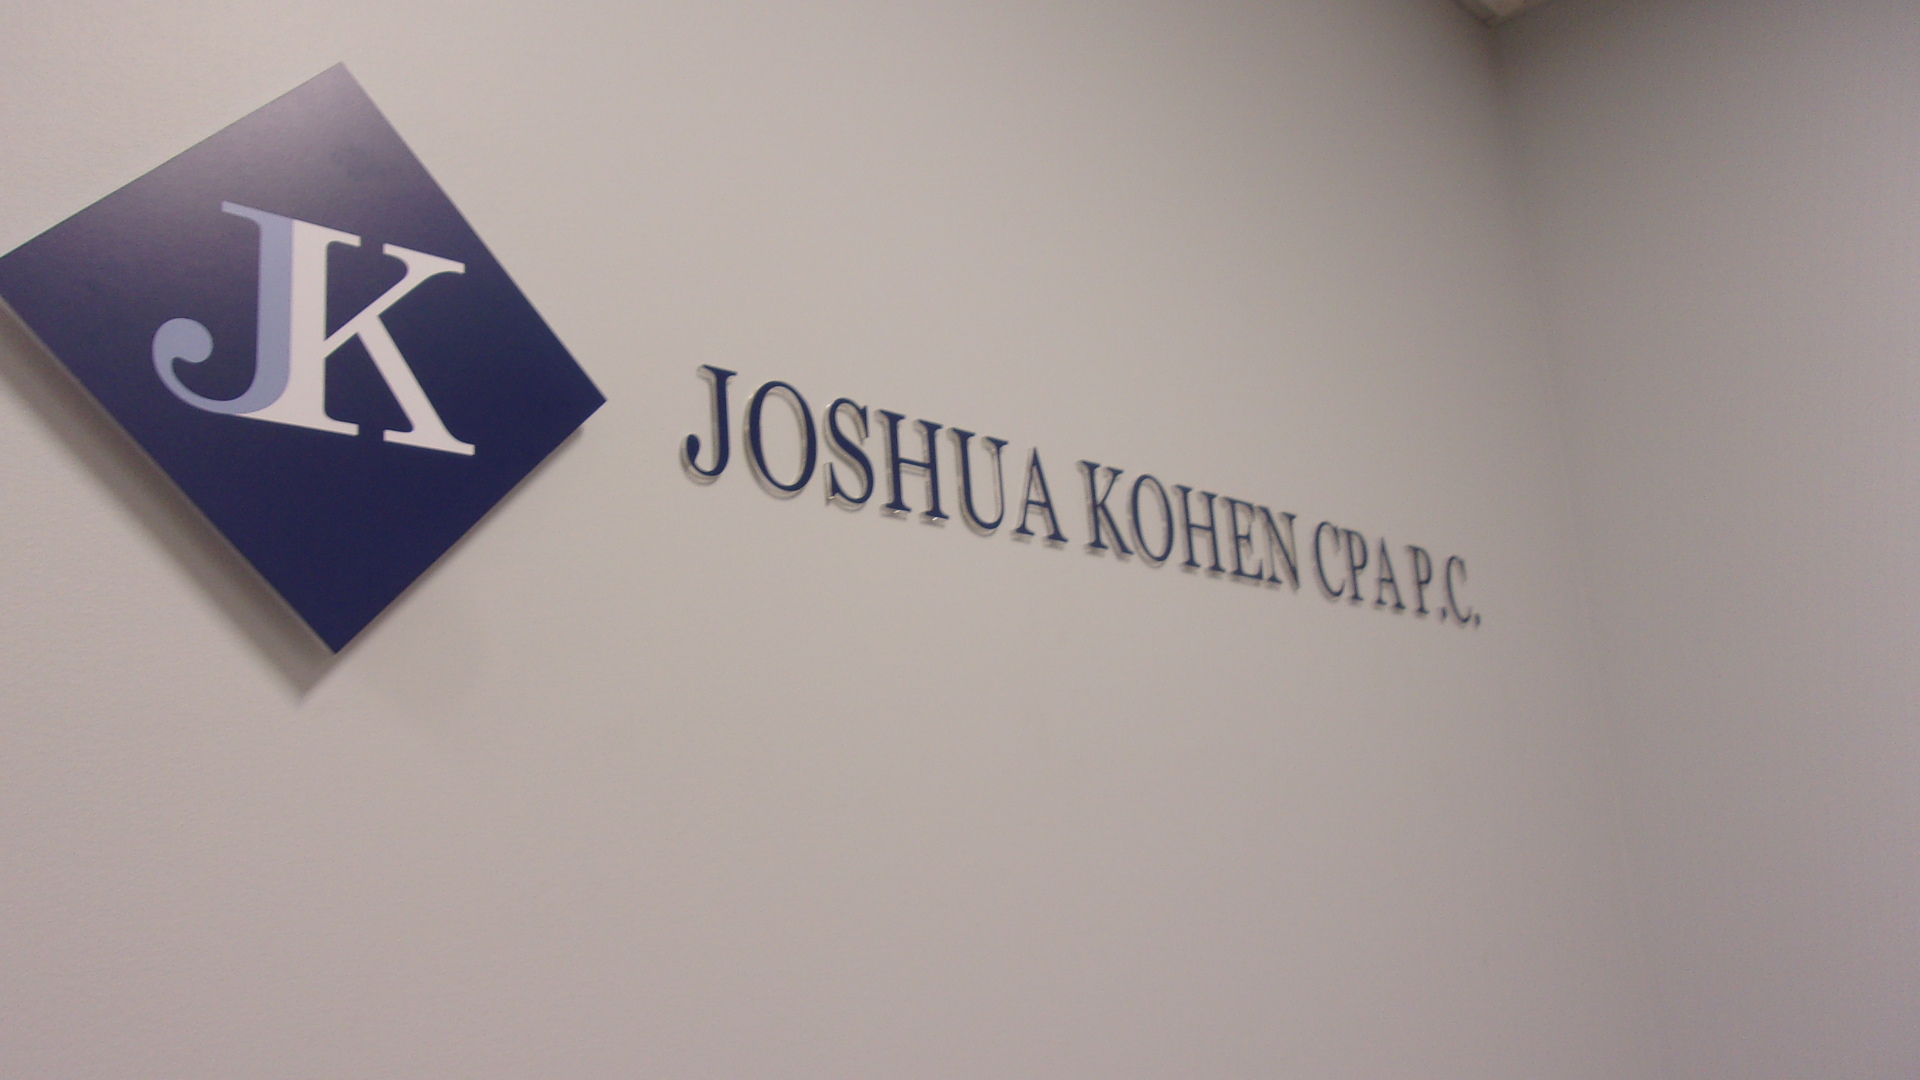 Joshua Kohen, CPA P.C.